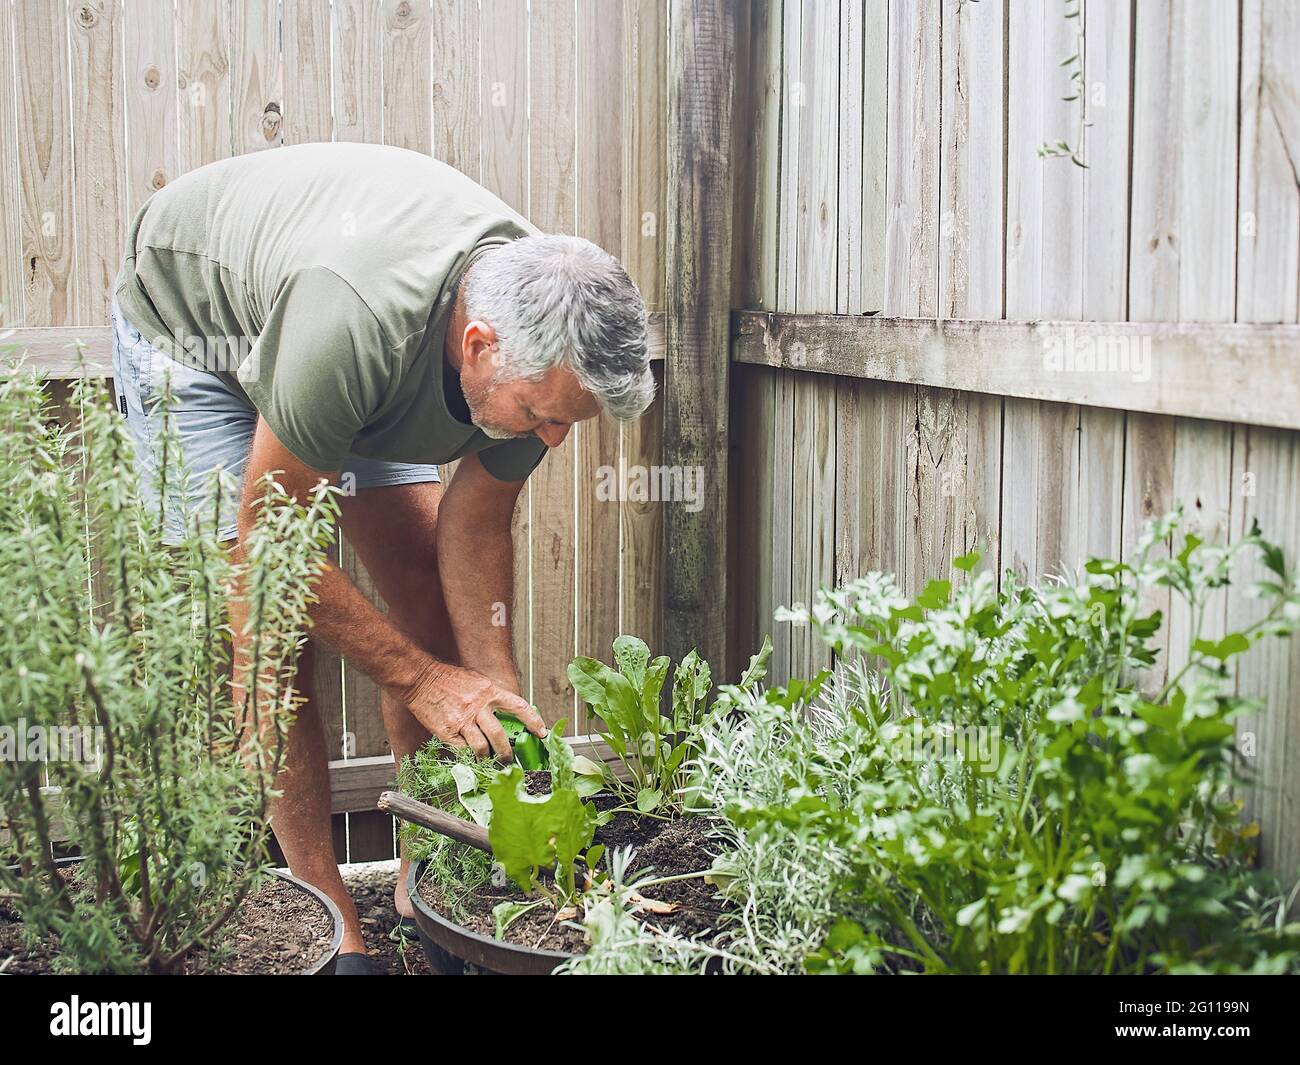 Im Innenhof schneidet ein älterer Mann Rosmarin. Home Gartenarbeit, Kräuter und Pflanzen im Garten Stockfoto